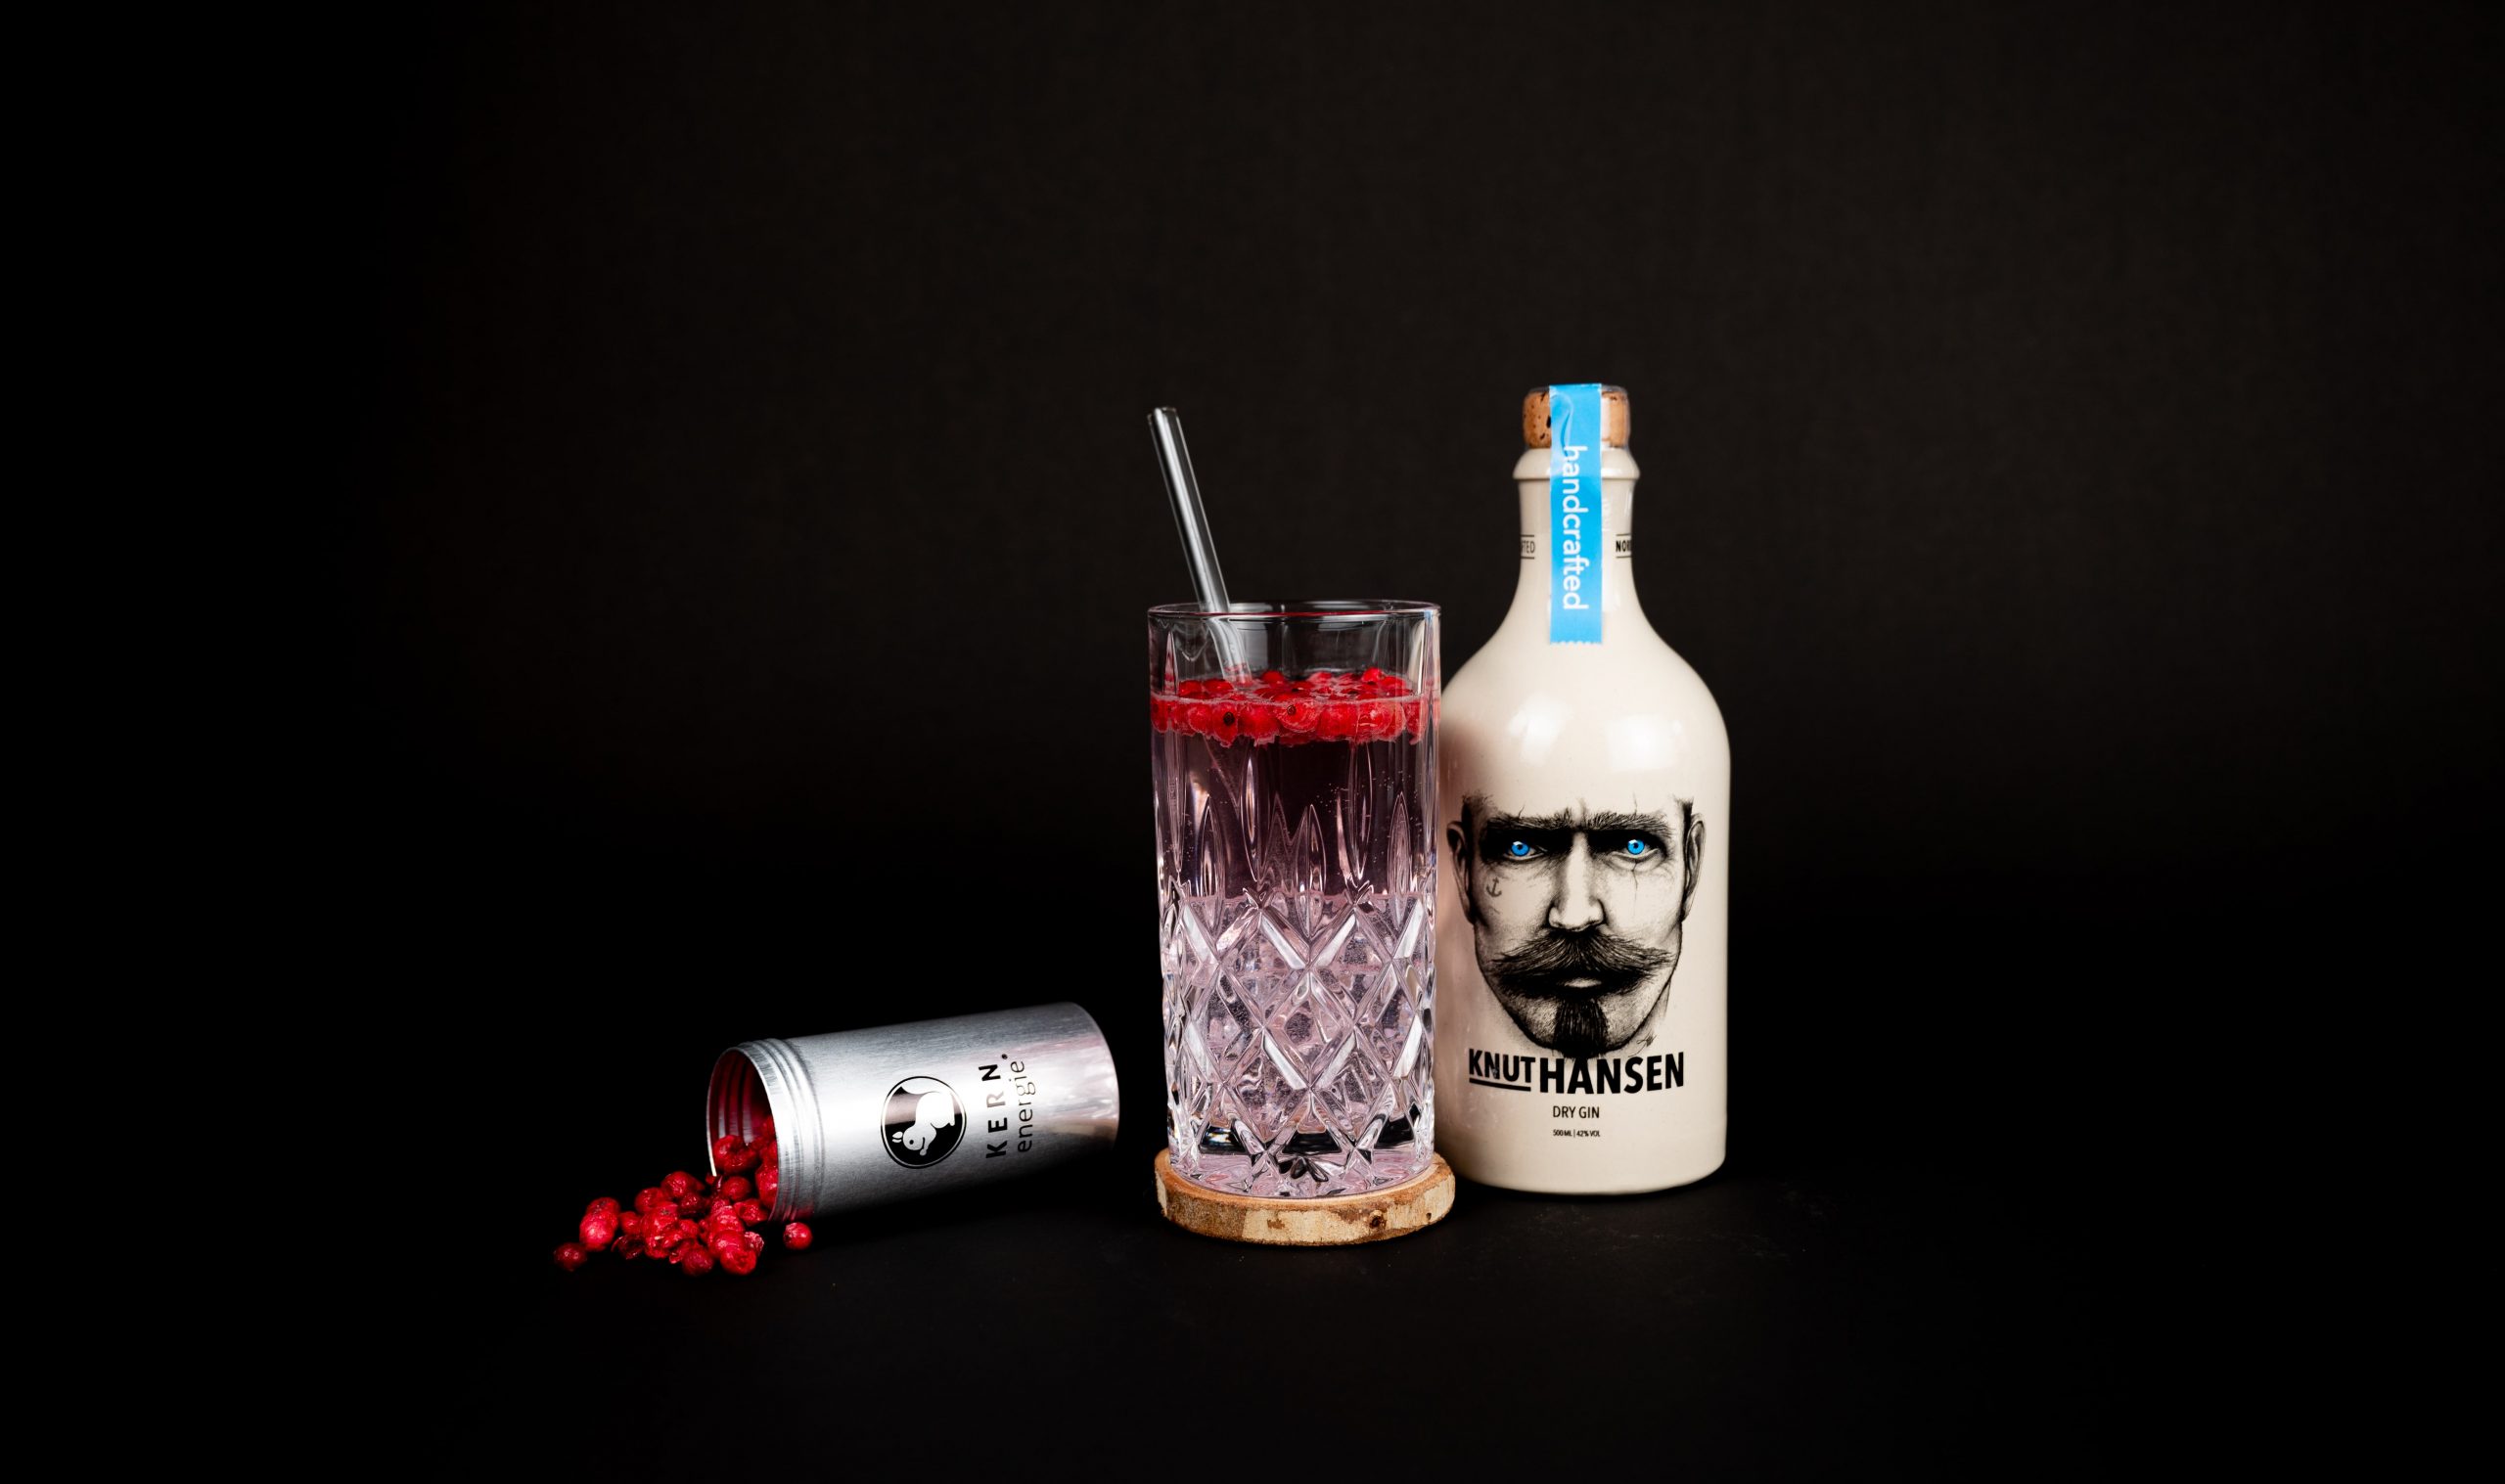 Gefülltes Gin Glas mit Strohhalm auf Holzuntersetzer zwischen einer Dose KERNenergie Gin Botanicals und einer Flasche Knut Hansen Gin vor schwarzem Hintergrund